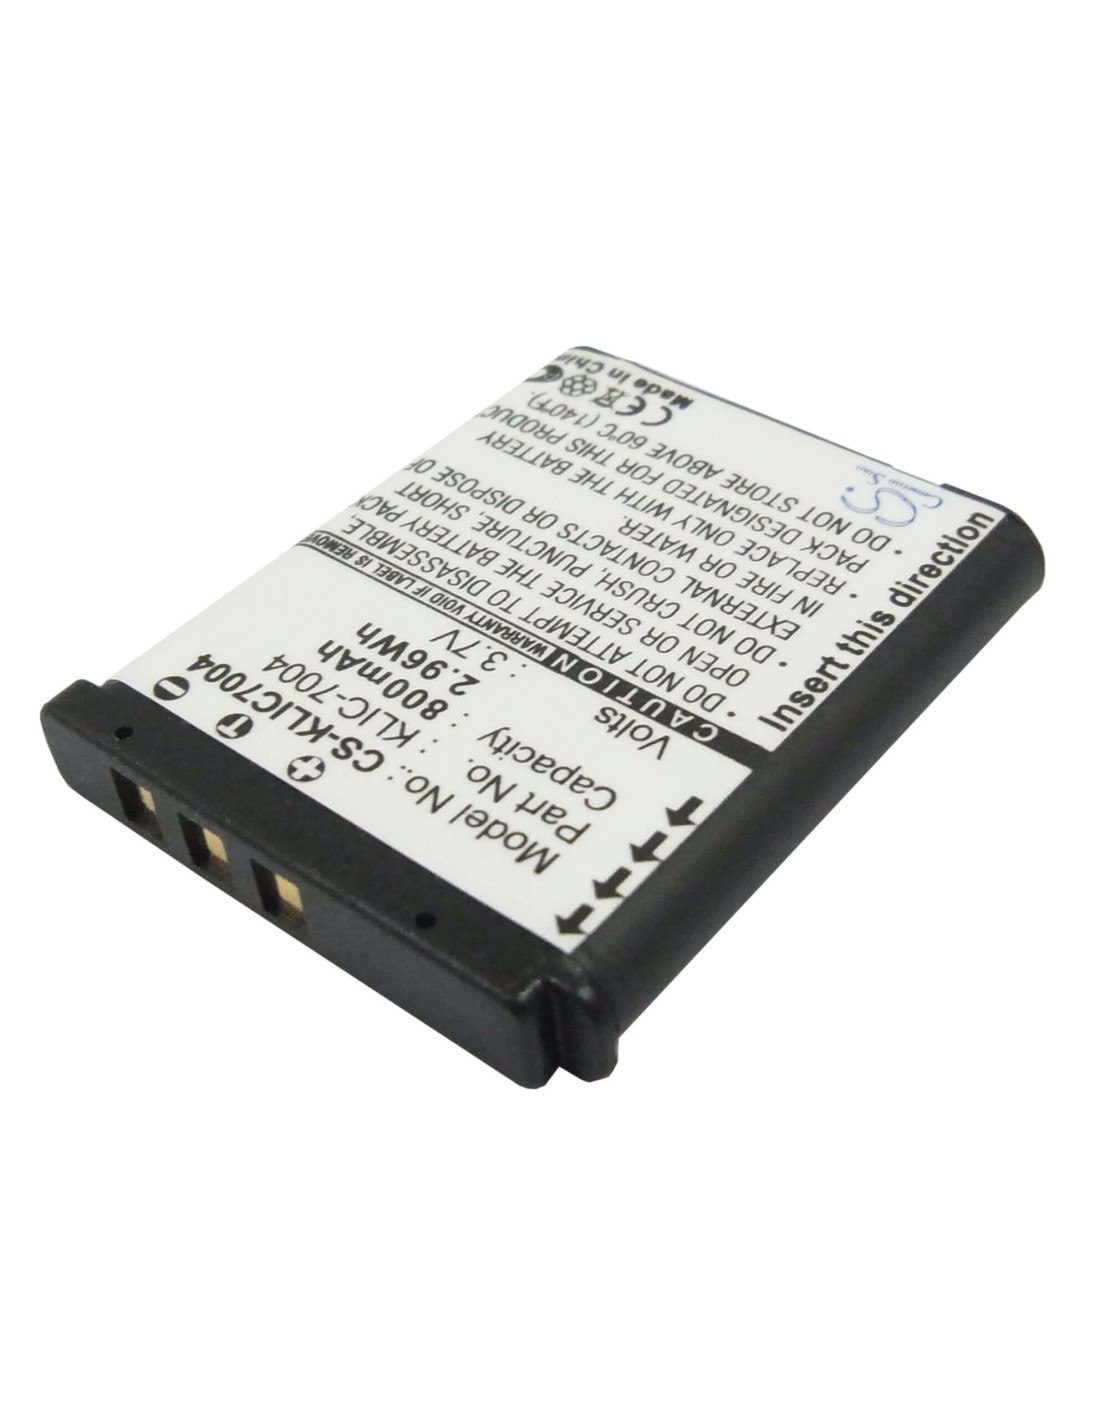 Battery for Kodak Easyshare M1033, Easyshare M1093 3.7V, 800mAh - 2.96Wh